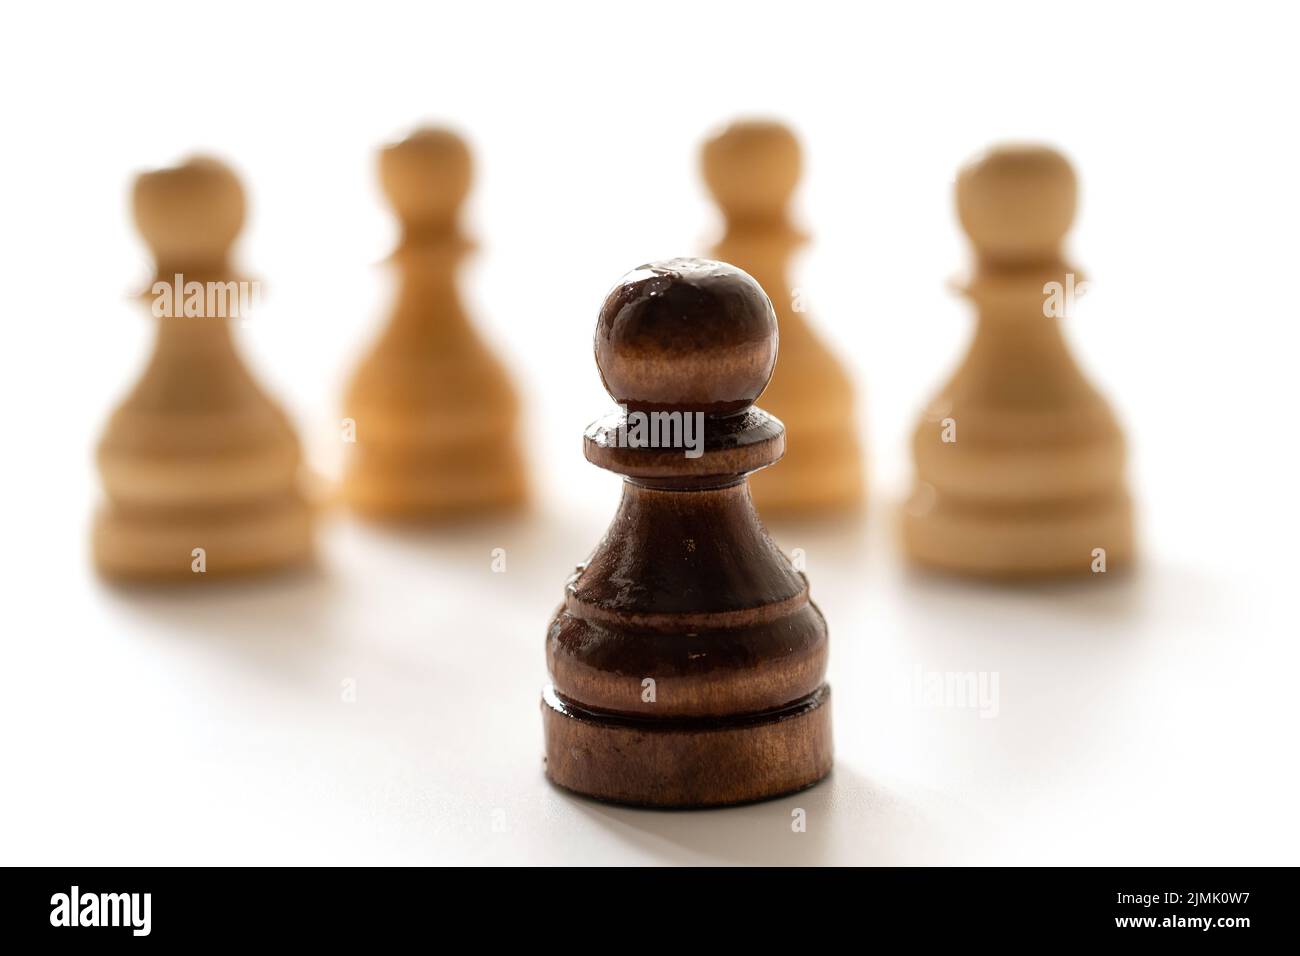 Schwarze Schachfigur unter Weißen. Konzept von Rassismus und Diskriminierung. Stockfoto